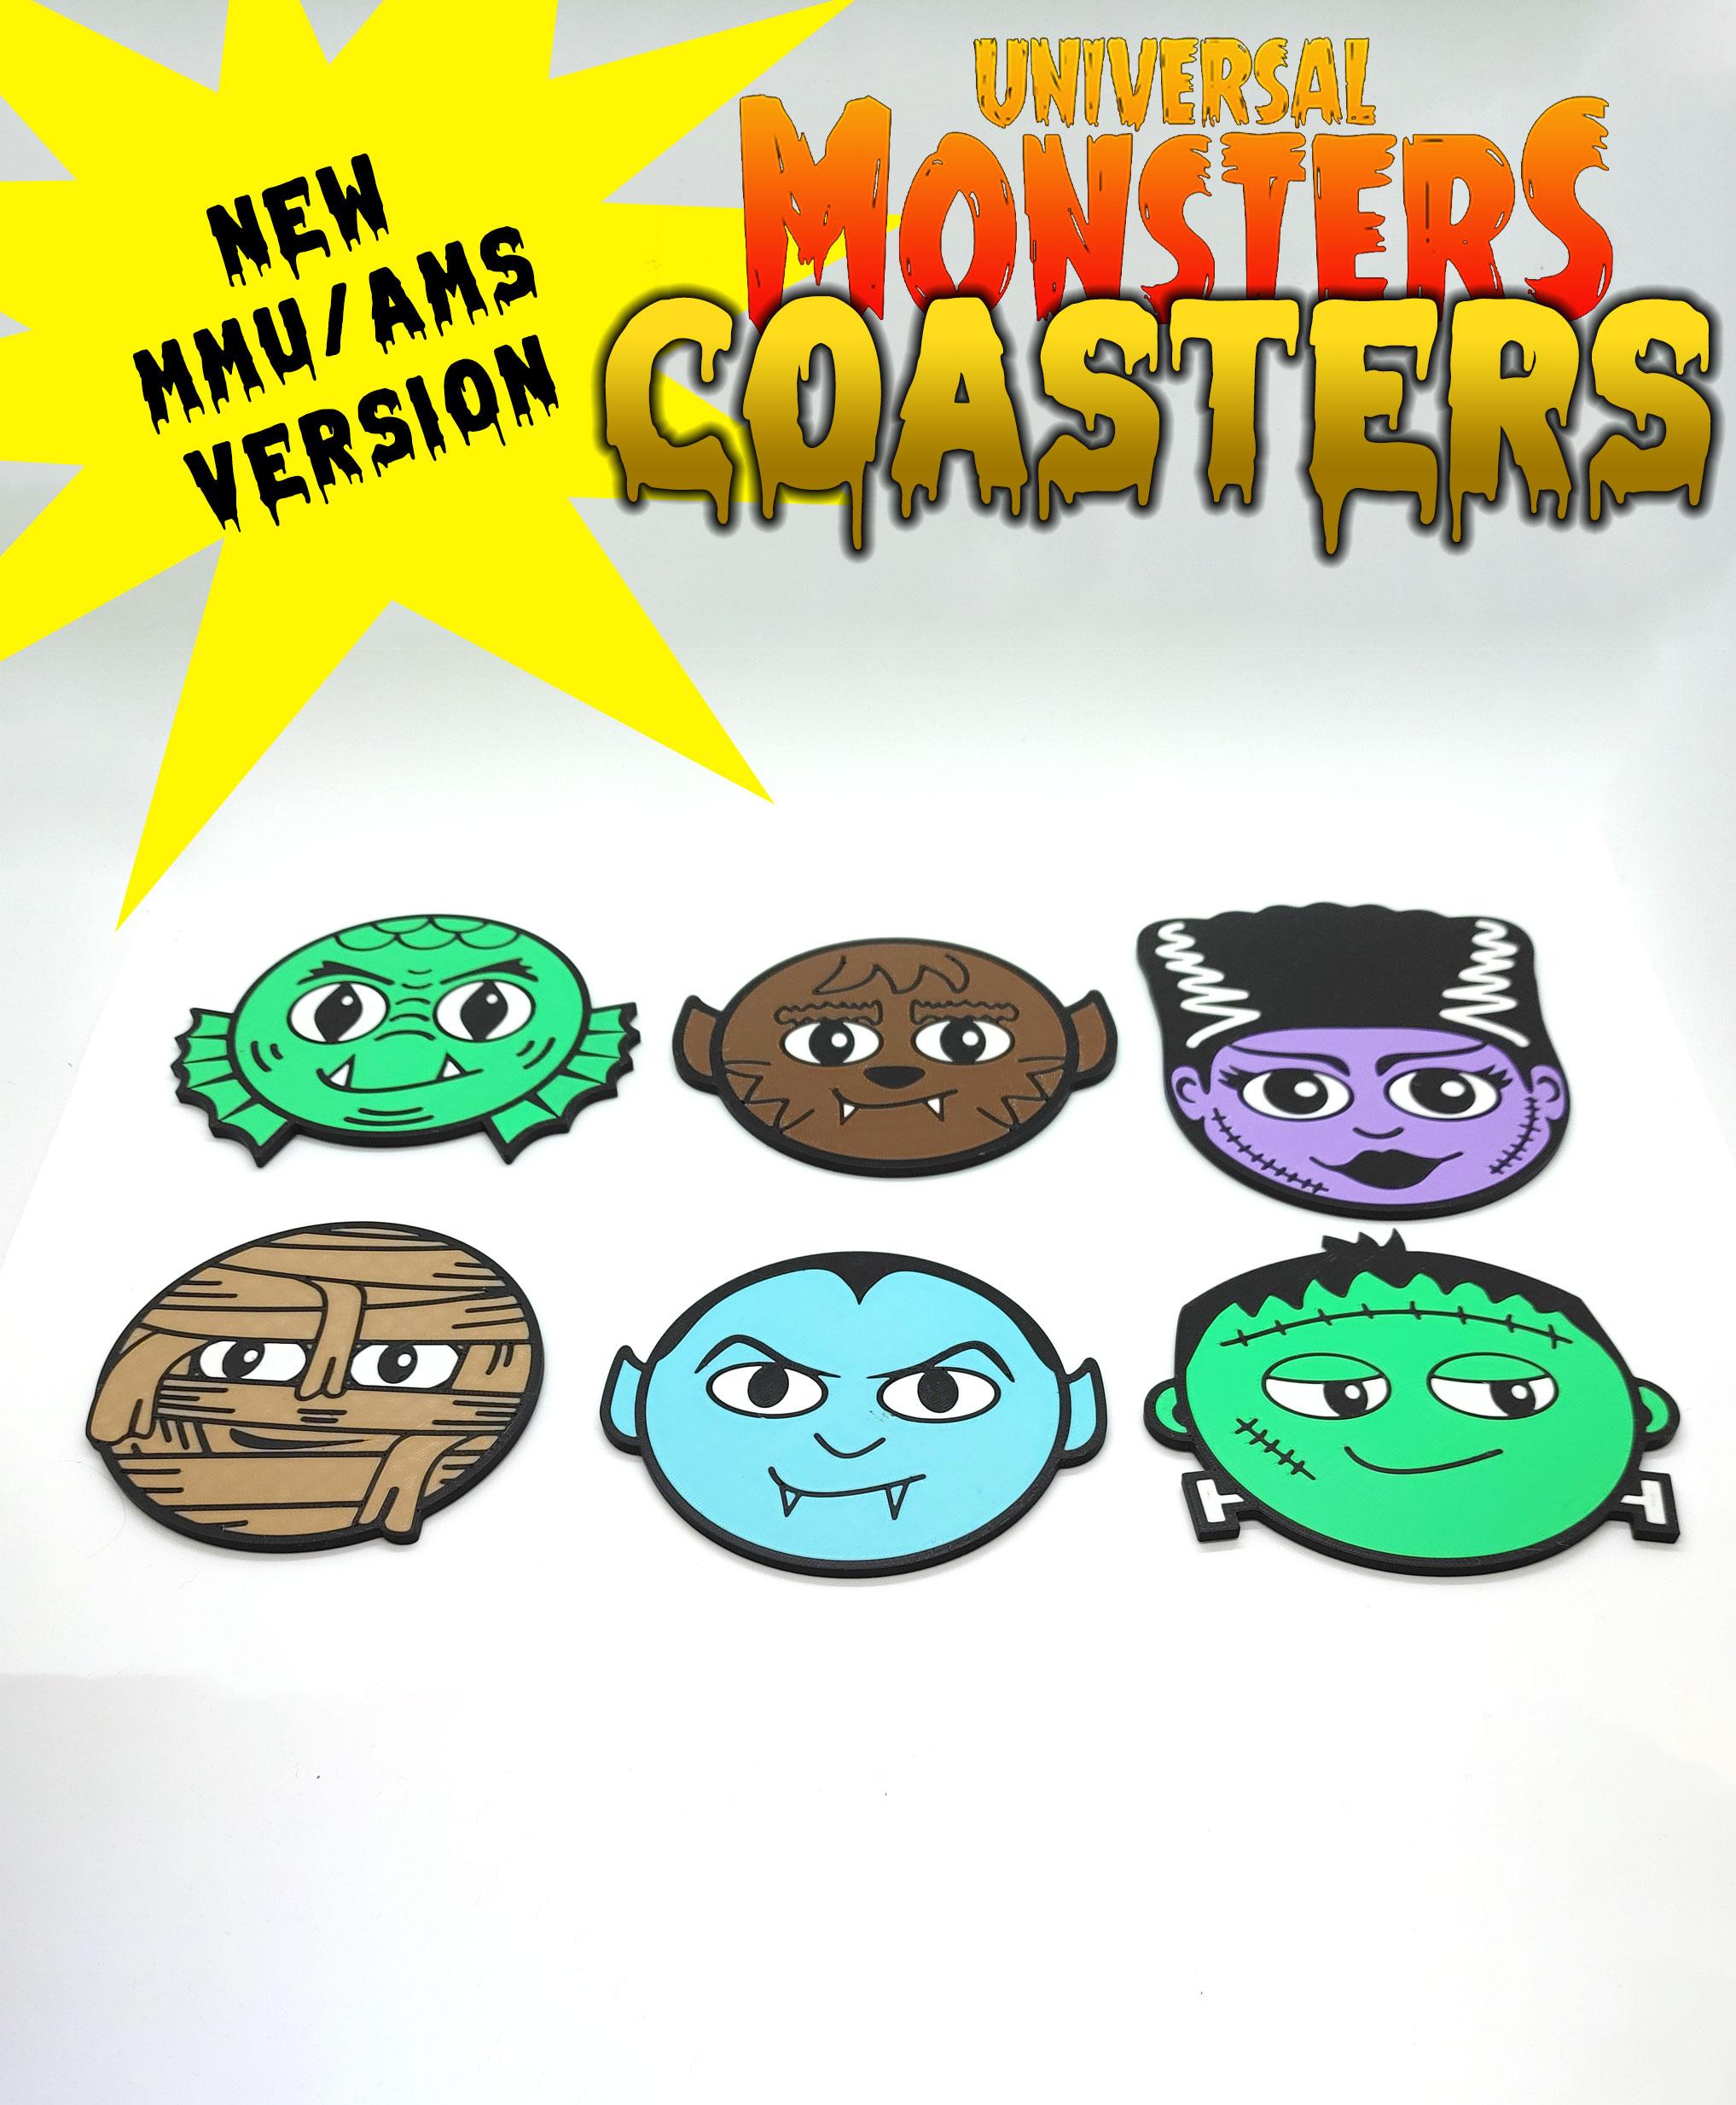 Universal Monsters Coasters MMU/AMS - Bride Of Frankenstein 3d model